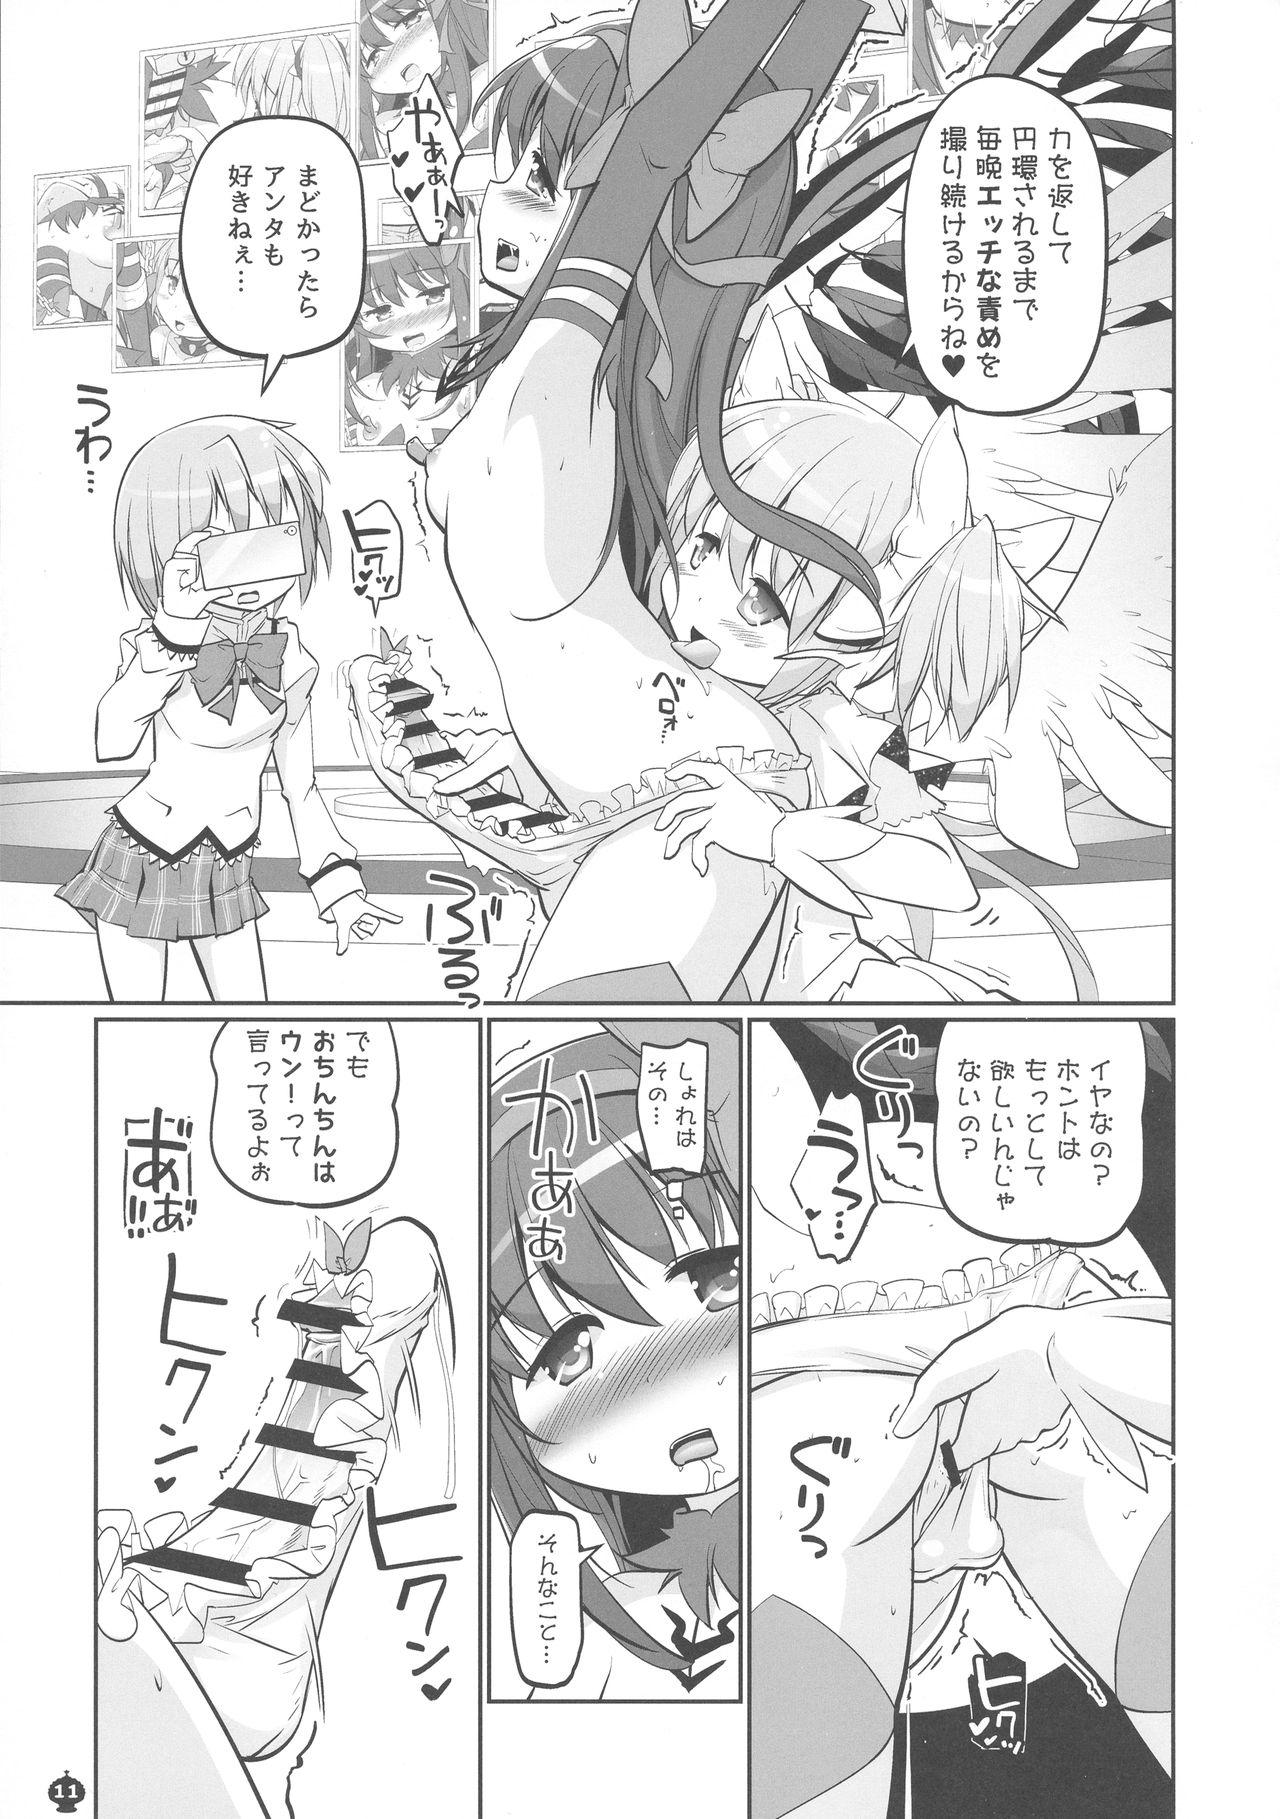 Lesbians Okoshibou o Daku no ga Machigaida nante... - Puella magi madoka magica Scandal - Page 11